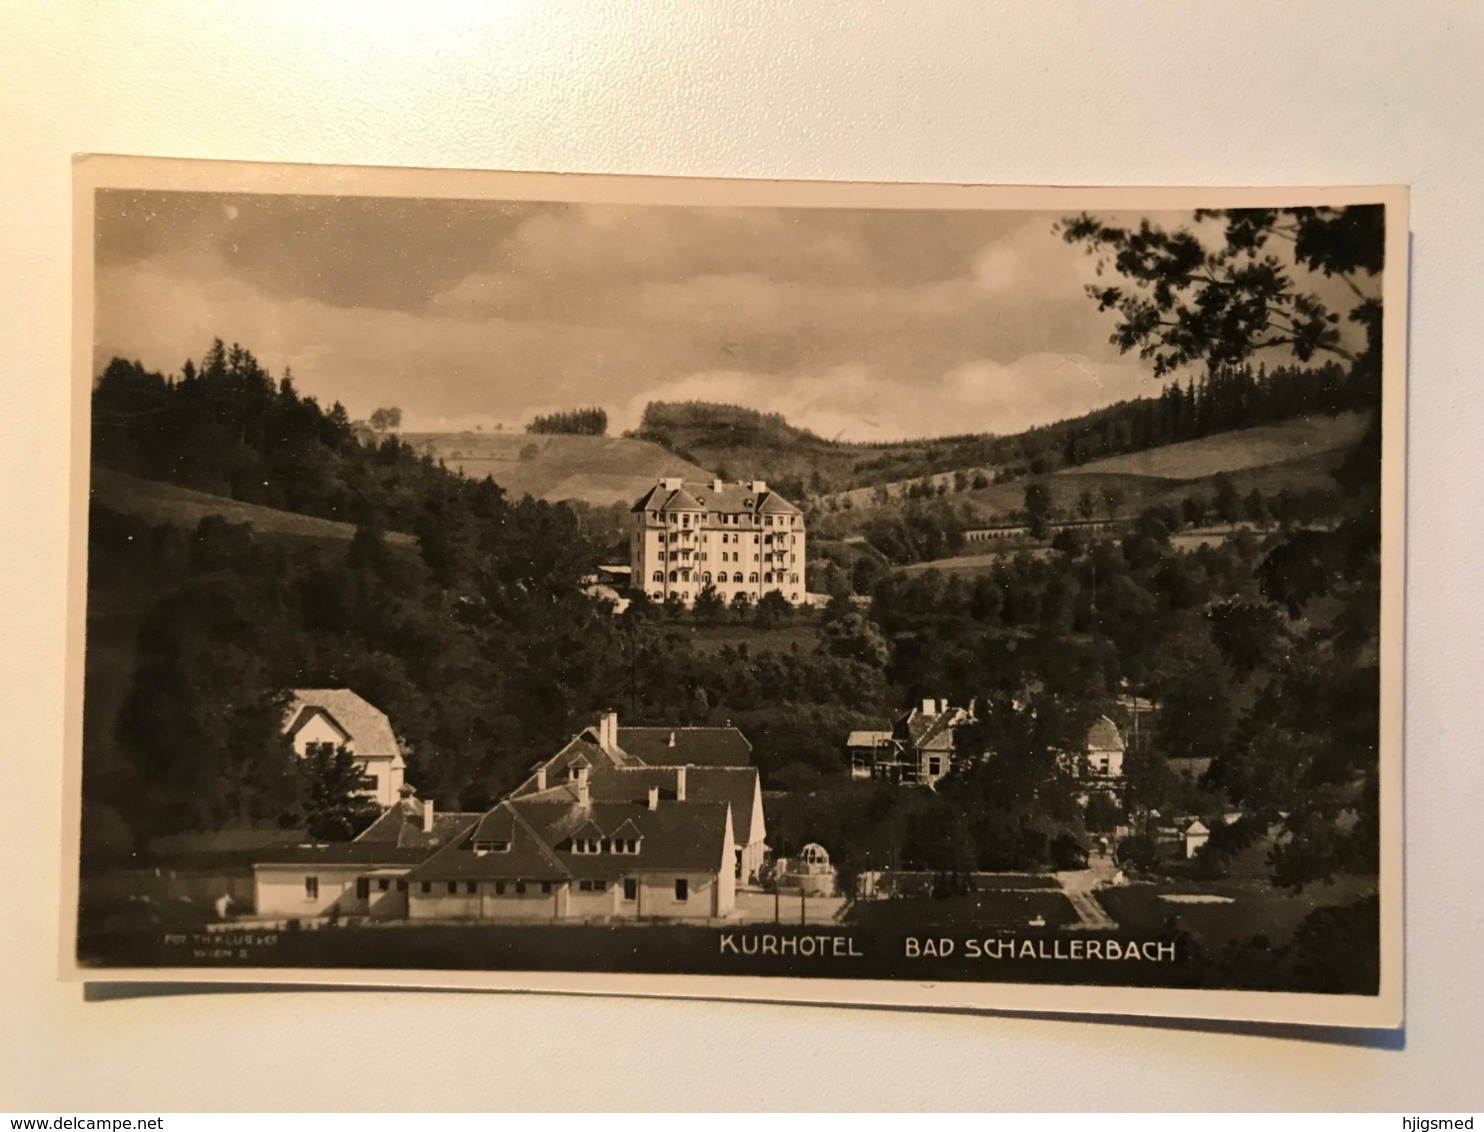 Austria Österreich Oberösterreich Bad Schallerbach Kurhotel Hotel RPPC Real Photo 11652 Post Card Postkarte POSTCARD - Bad Schallerbach